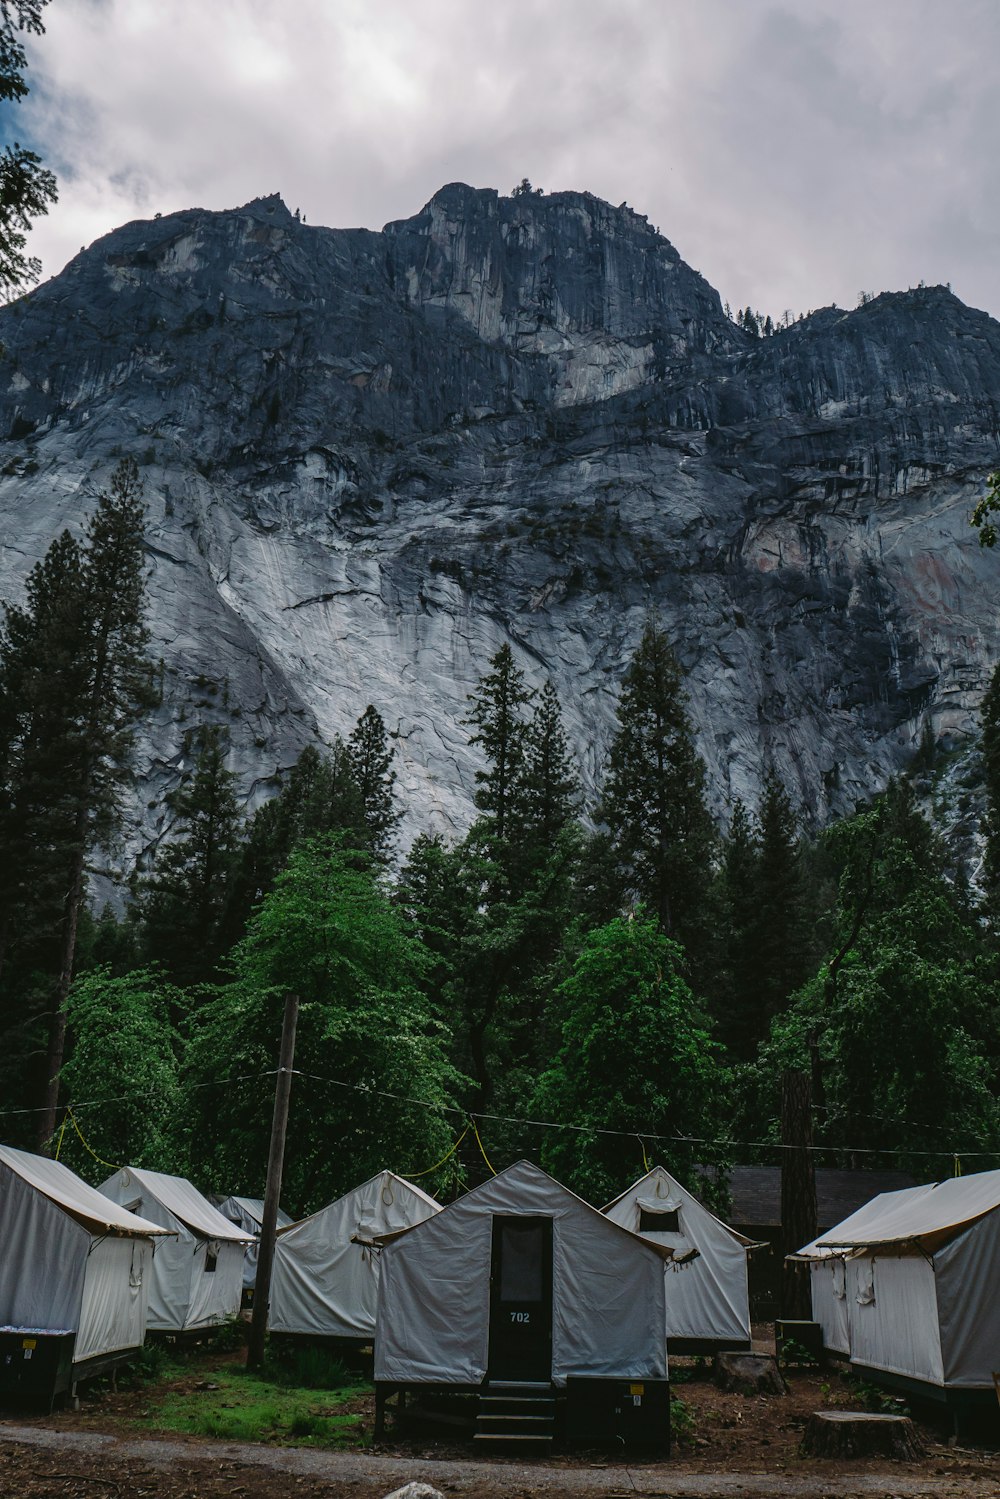 ver fotografia de tendas da casa branca perto de árvores sob a montanha preta e cinza